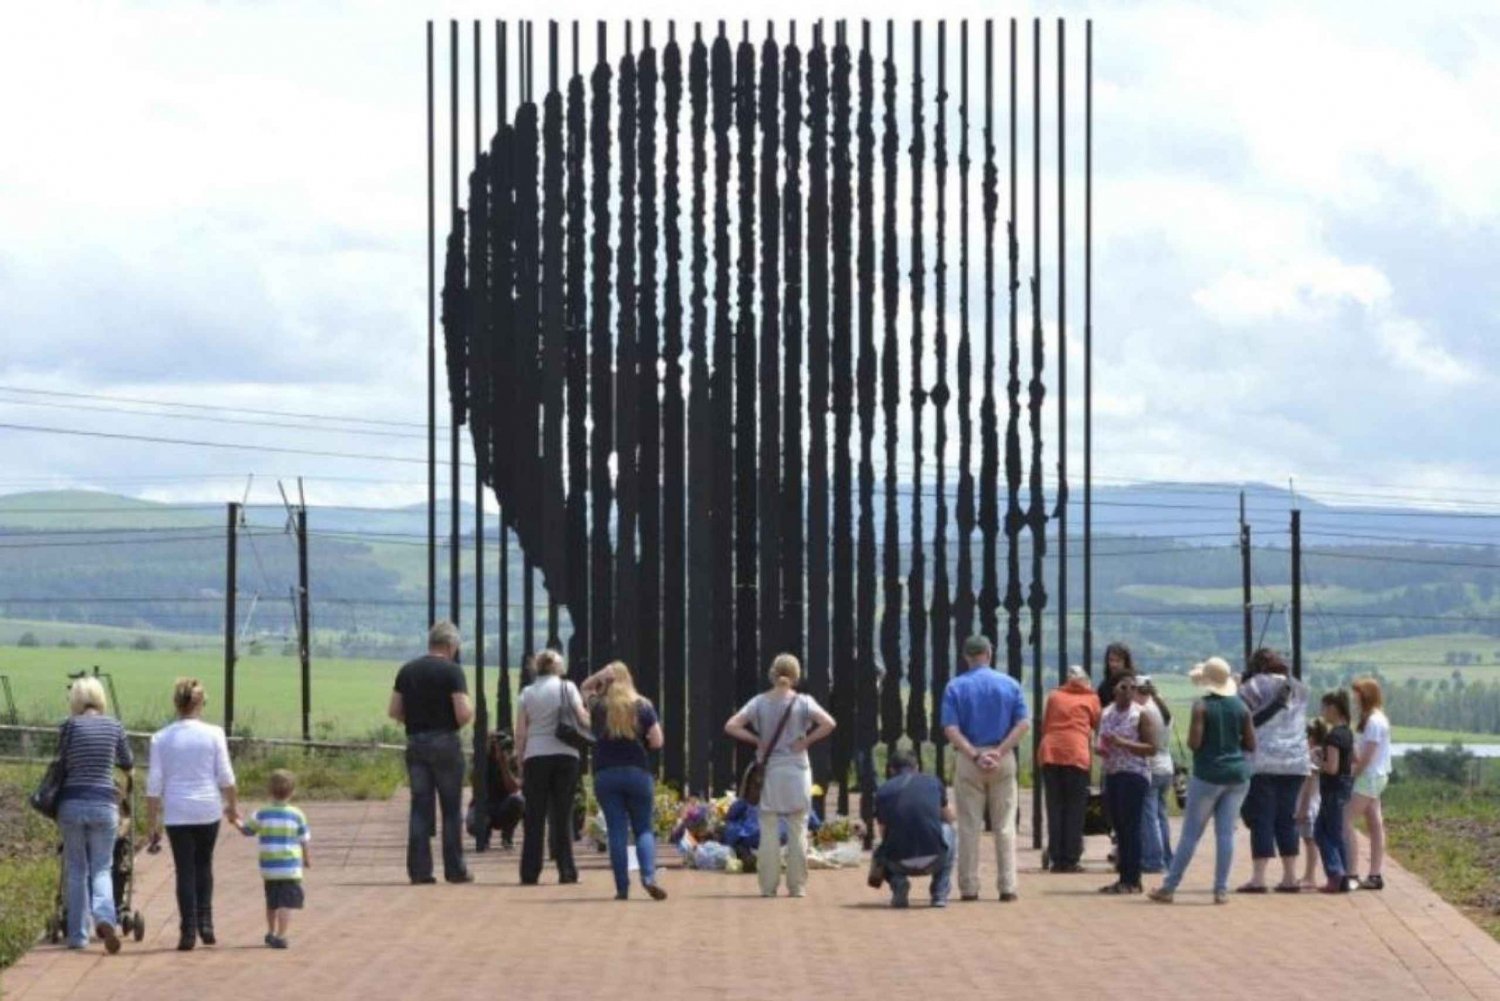 Drakensberg + Mandela Capture Site Full Day Tour From Durban